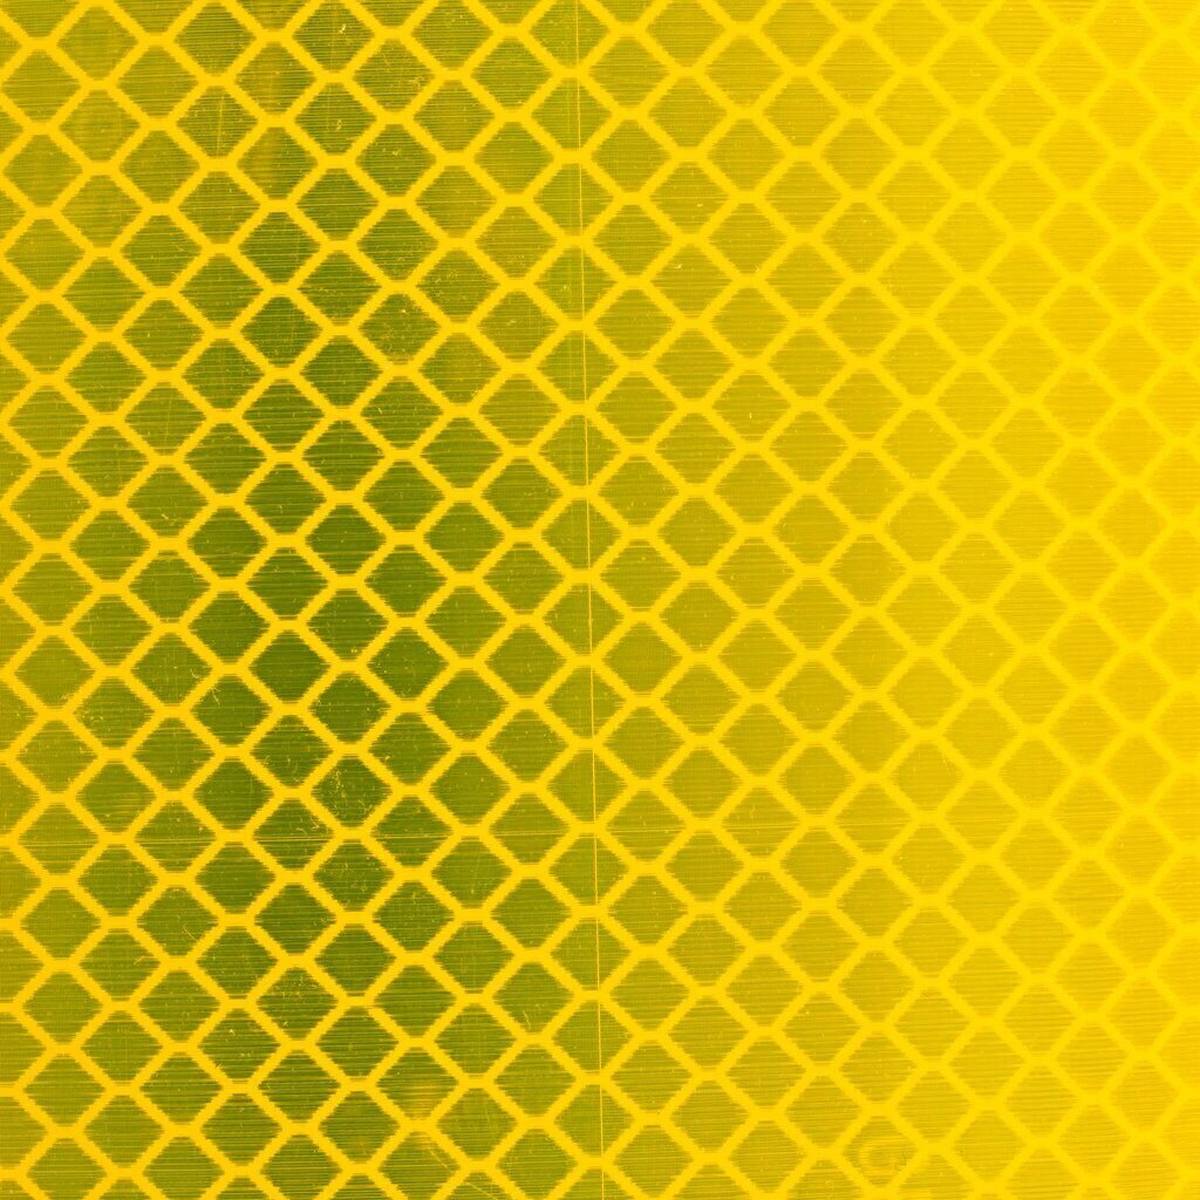 Pellicola riflettente 3M Diamond Grade DG³ 4081, giallo fluorescente (giallo brillante), 610 mm x 45,7 m